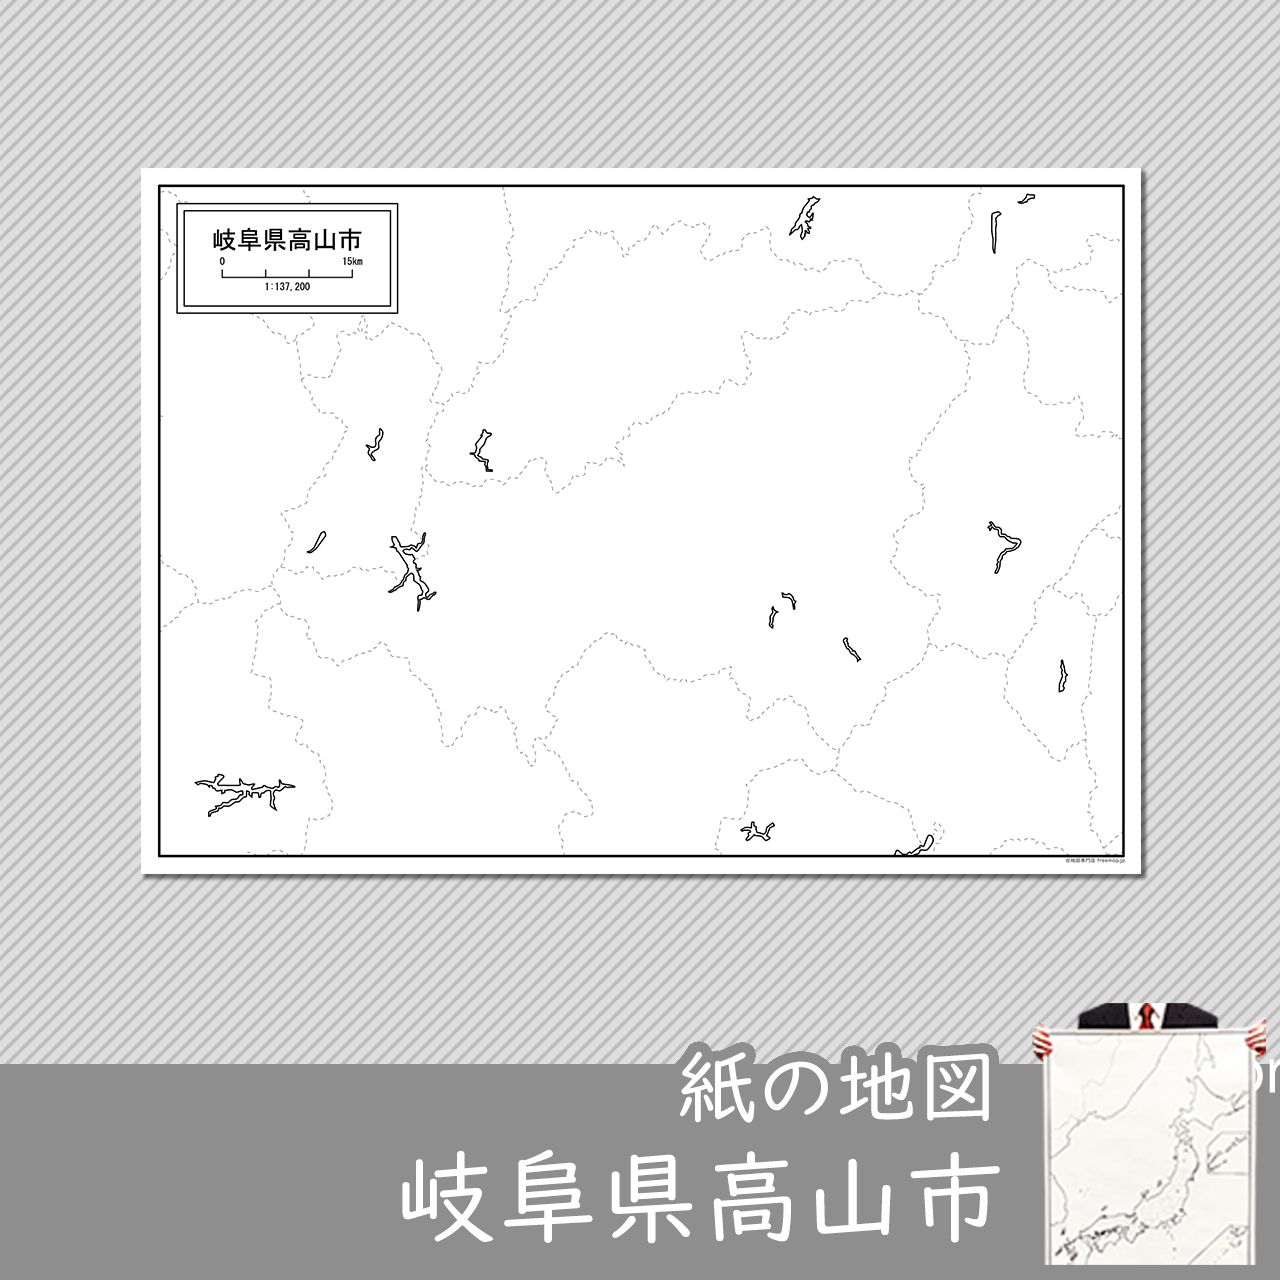 高山市の紙の白地図のサムネイル